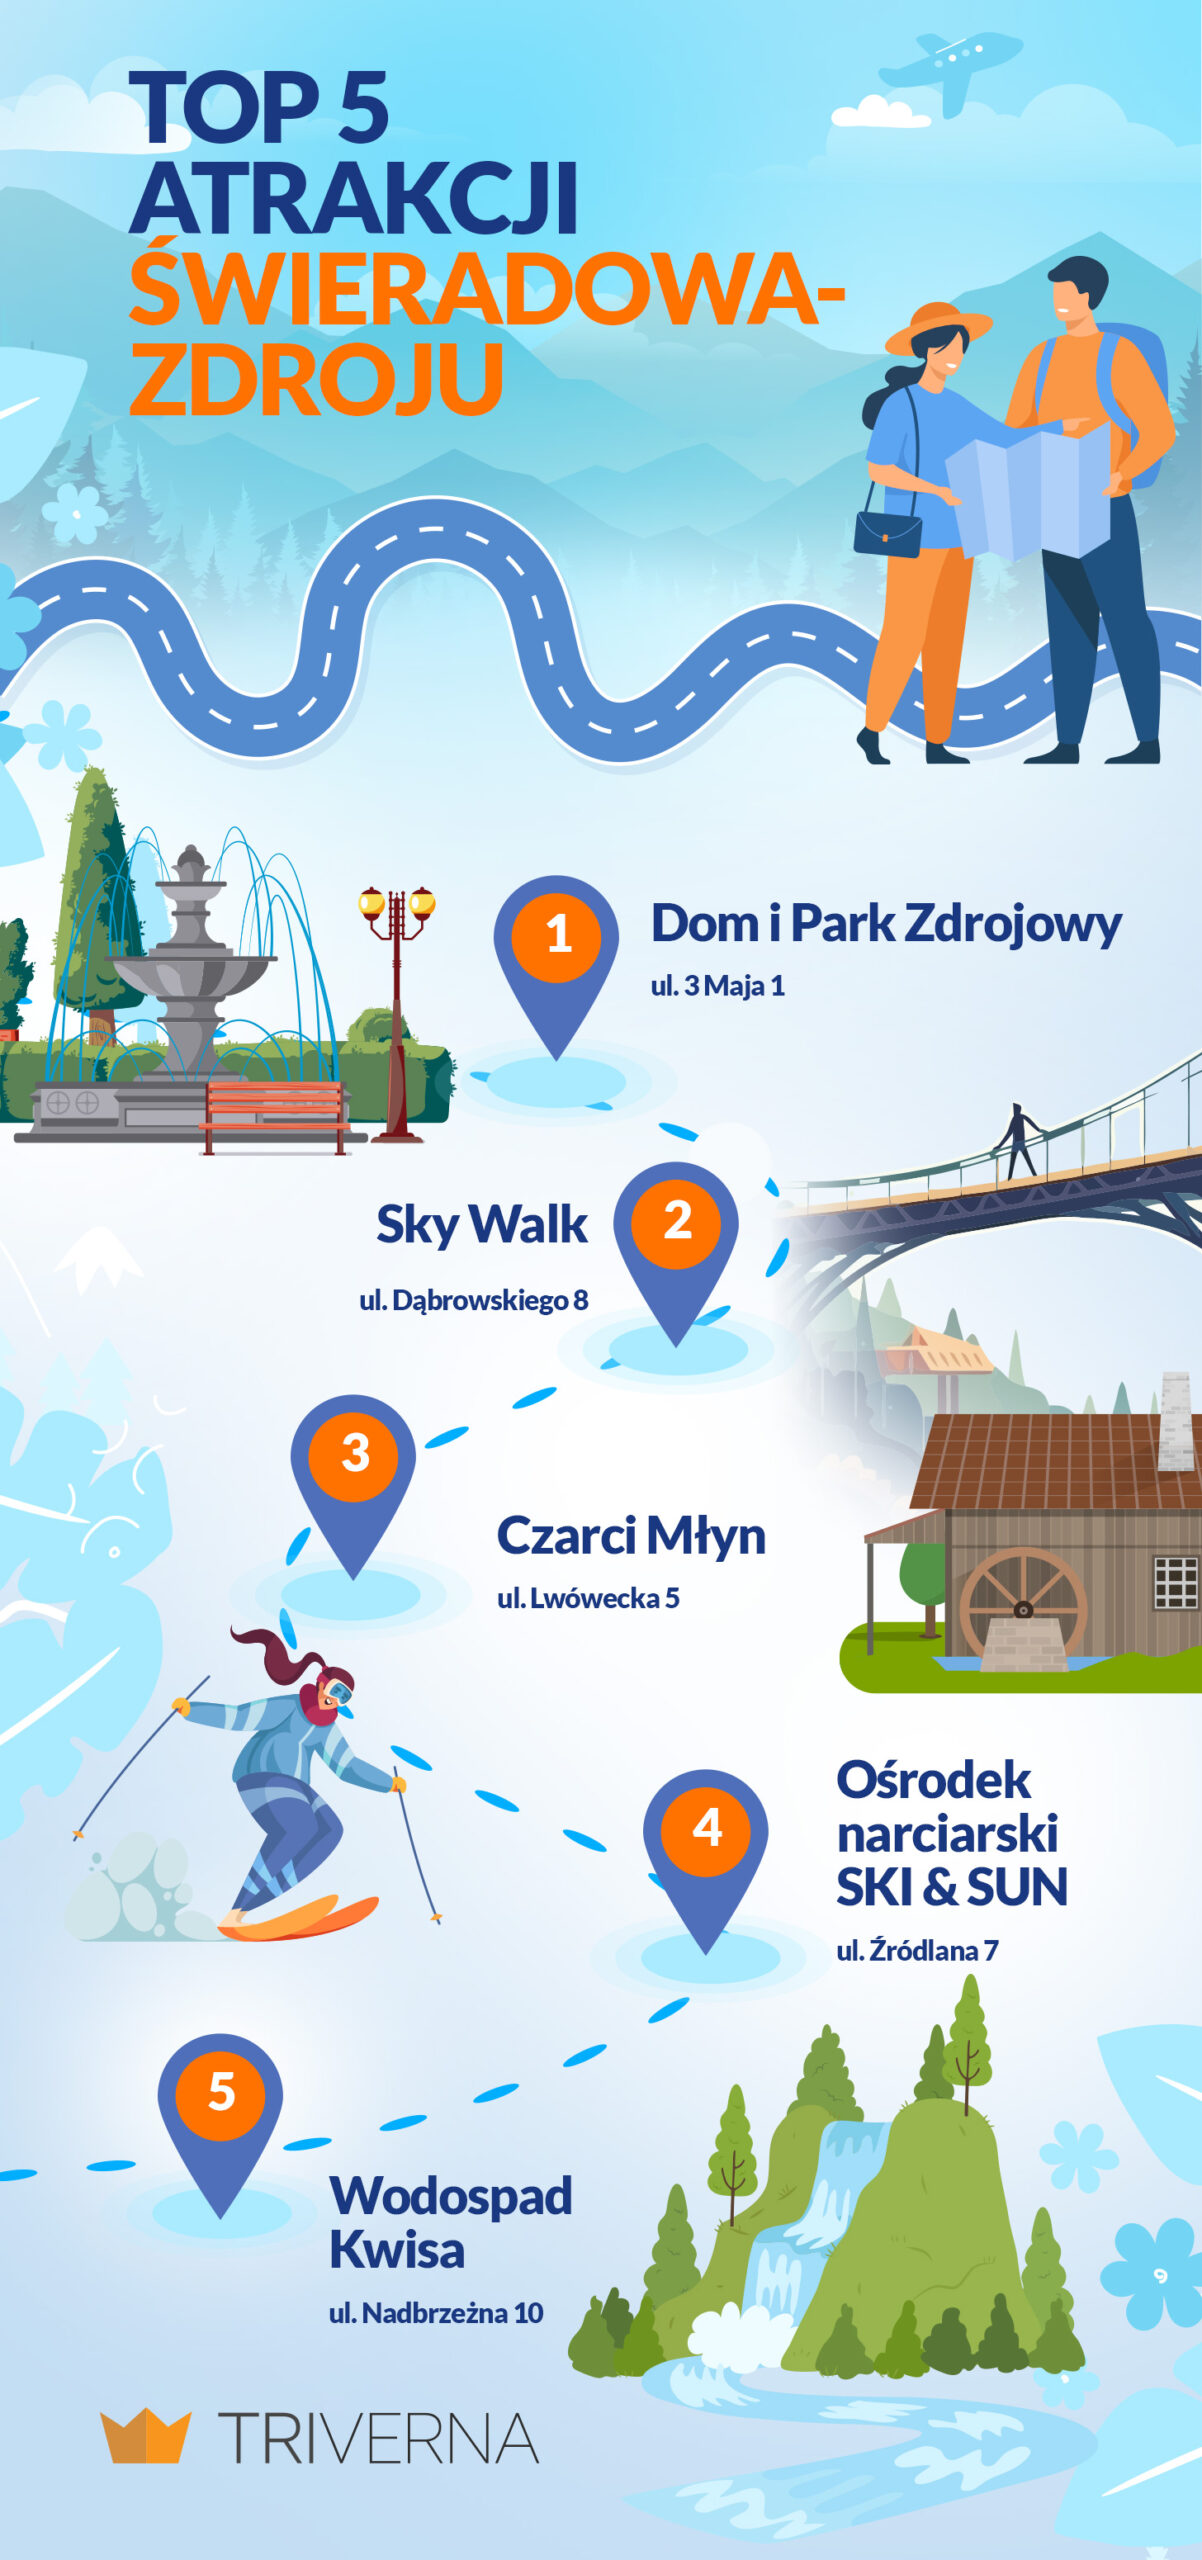 Top atrakcje Świeradowa-Zdroju - infografika